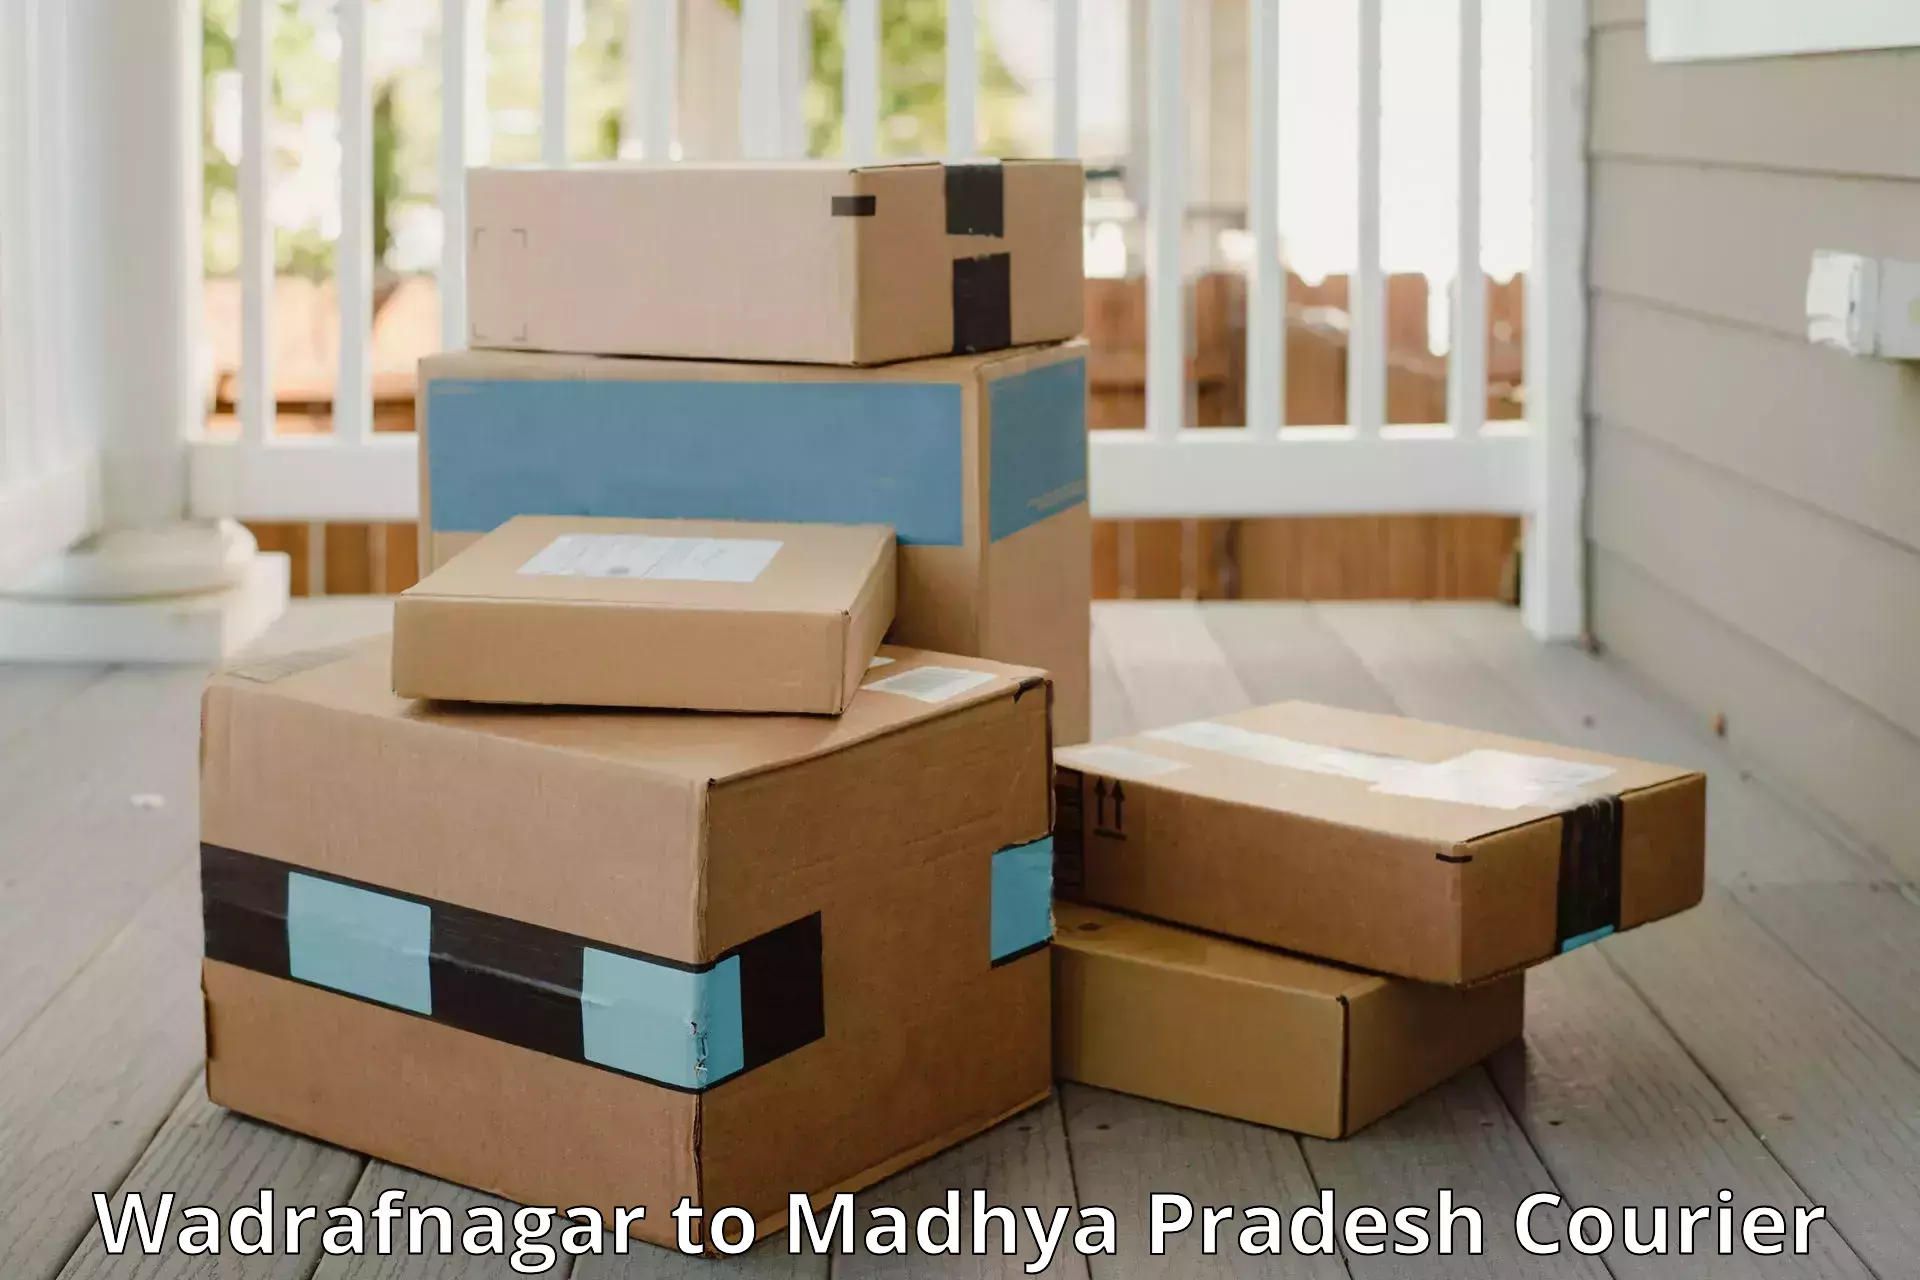 Baggage relocation service Wadrafnagar to Sendhwa